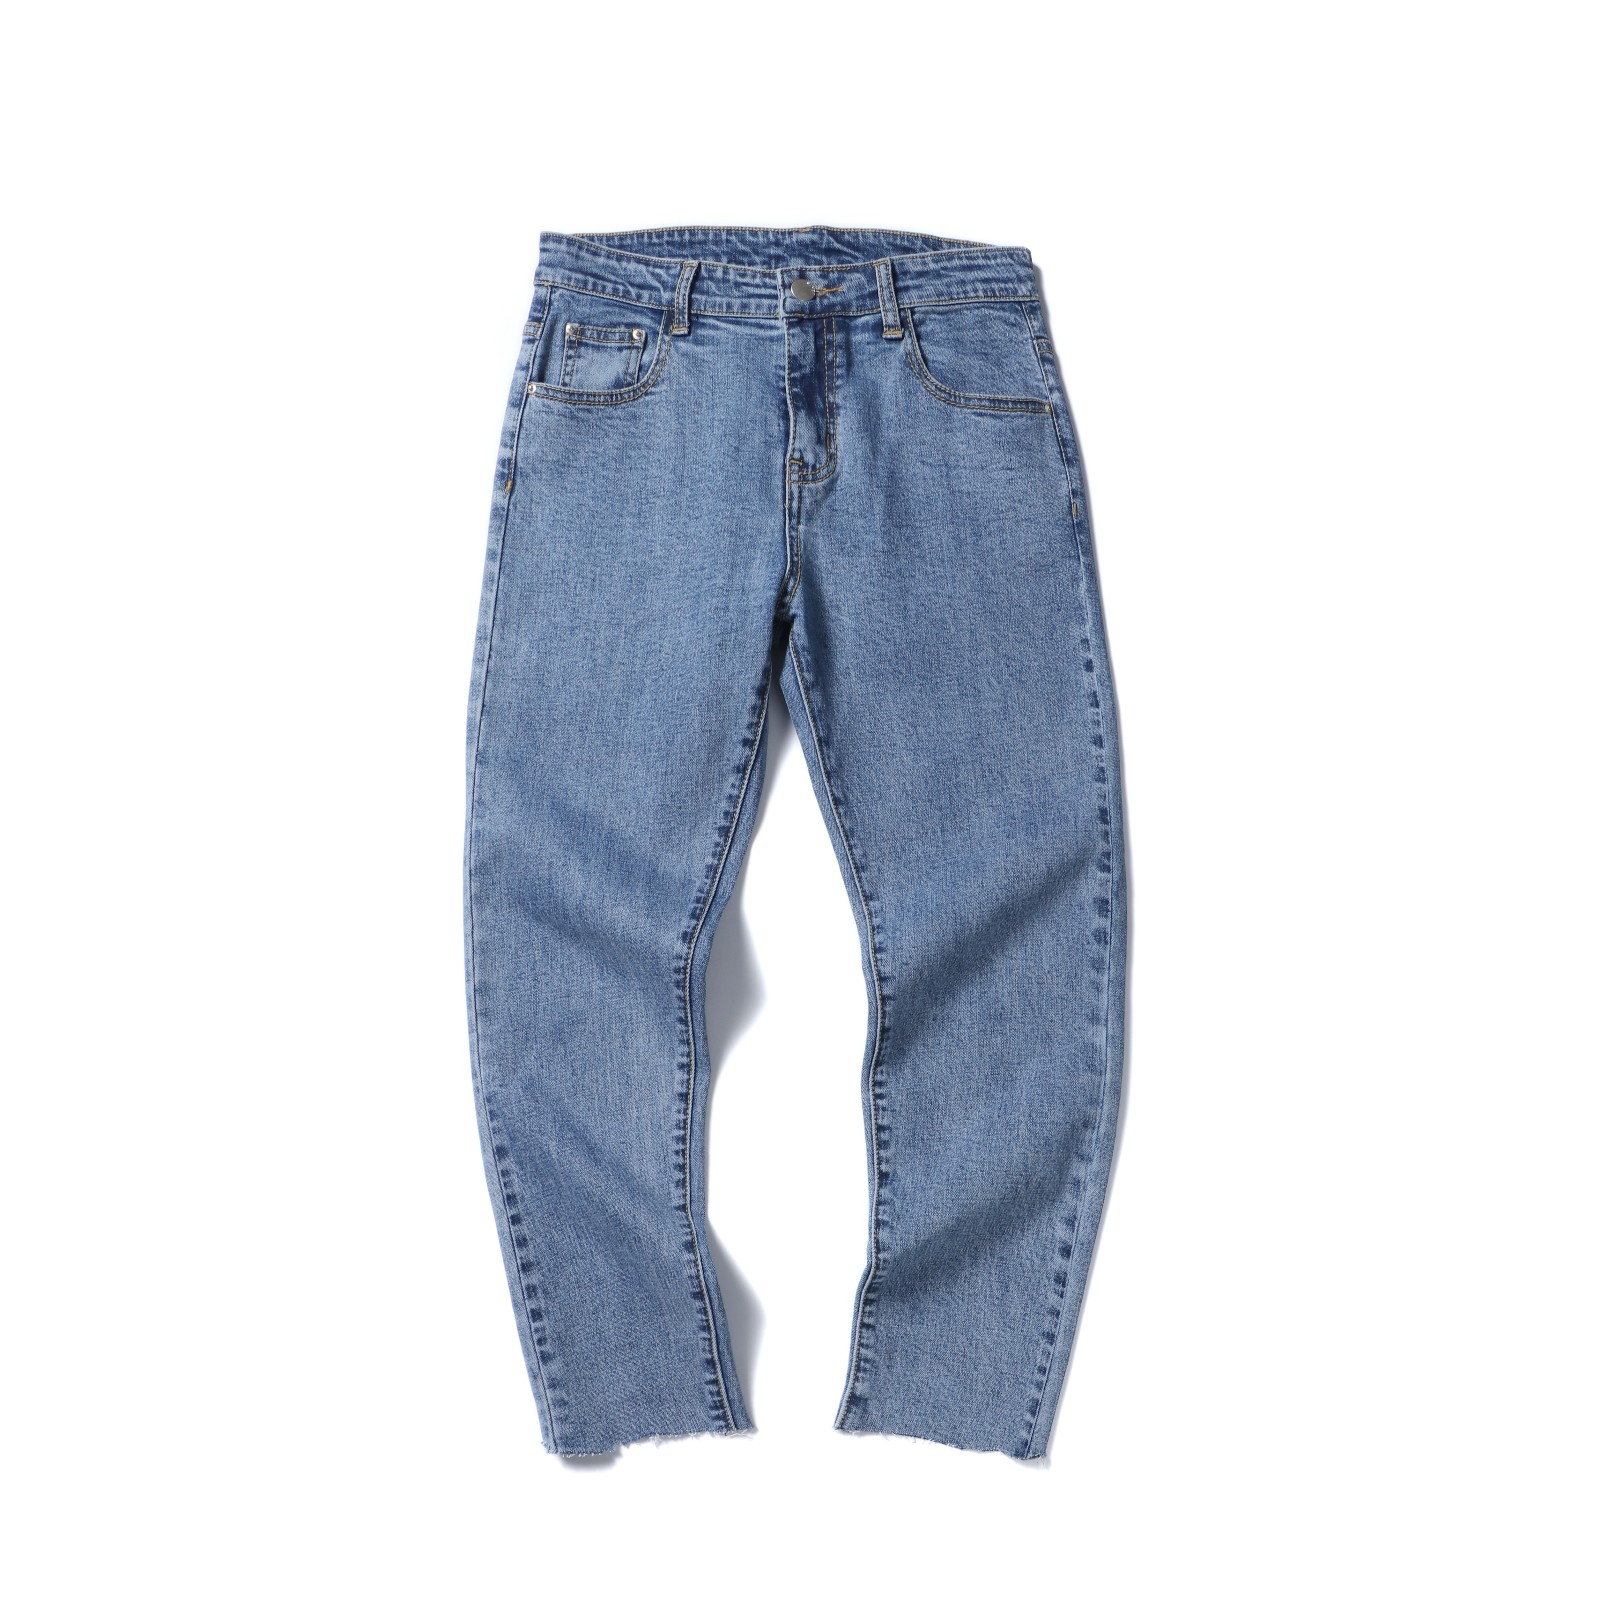 Broeken Heren Grote Maten Spijkerbroek Jeans Blauw